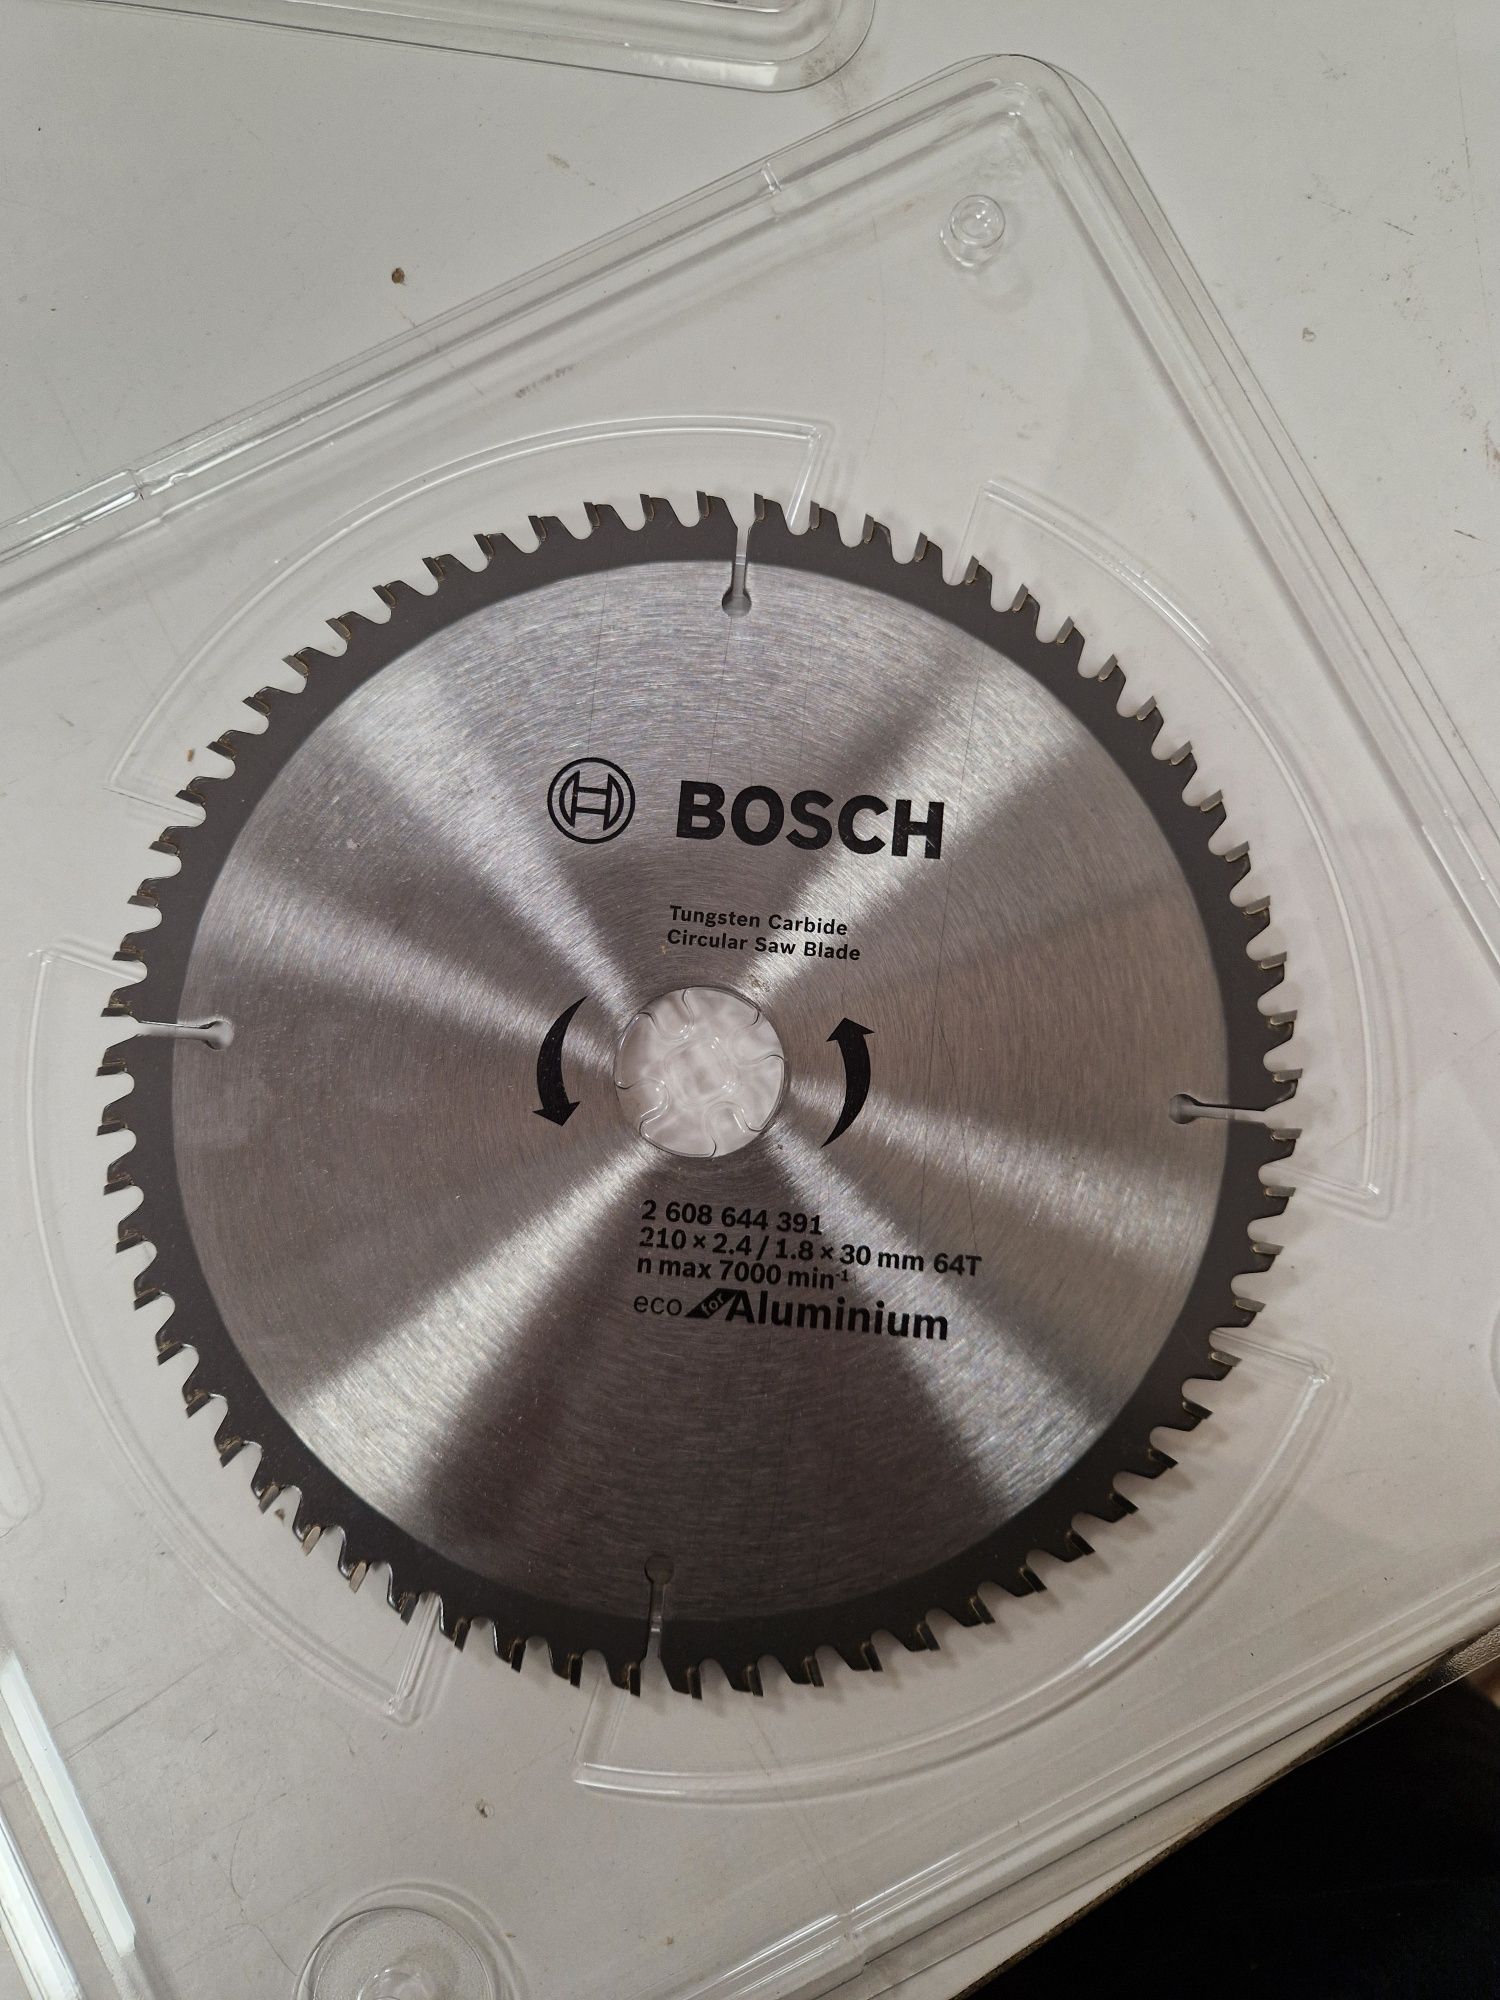 Vând panza circular Bosch 210x2.4x30 mm 64 T